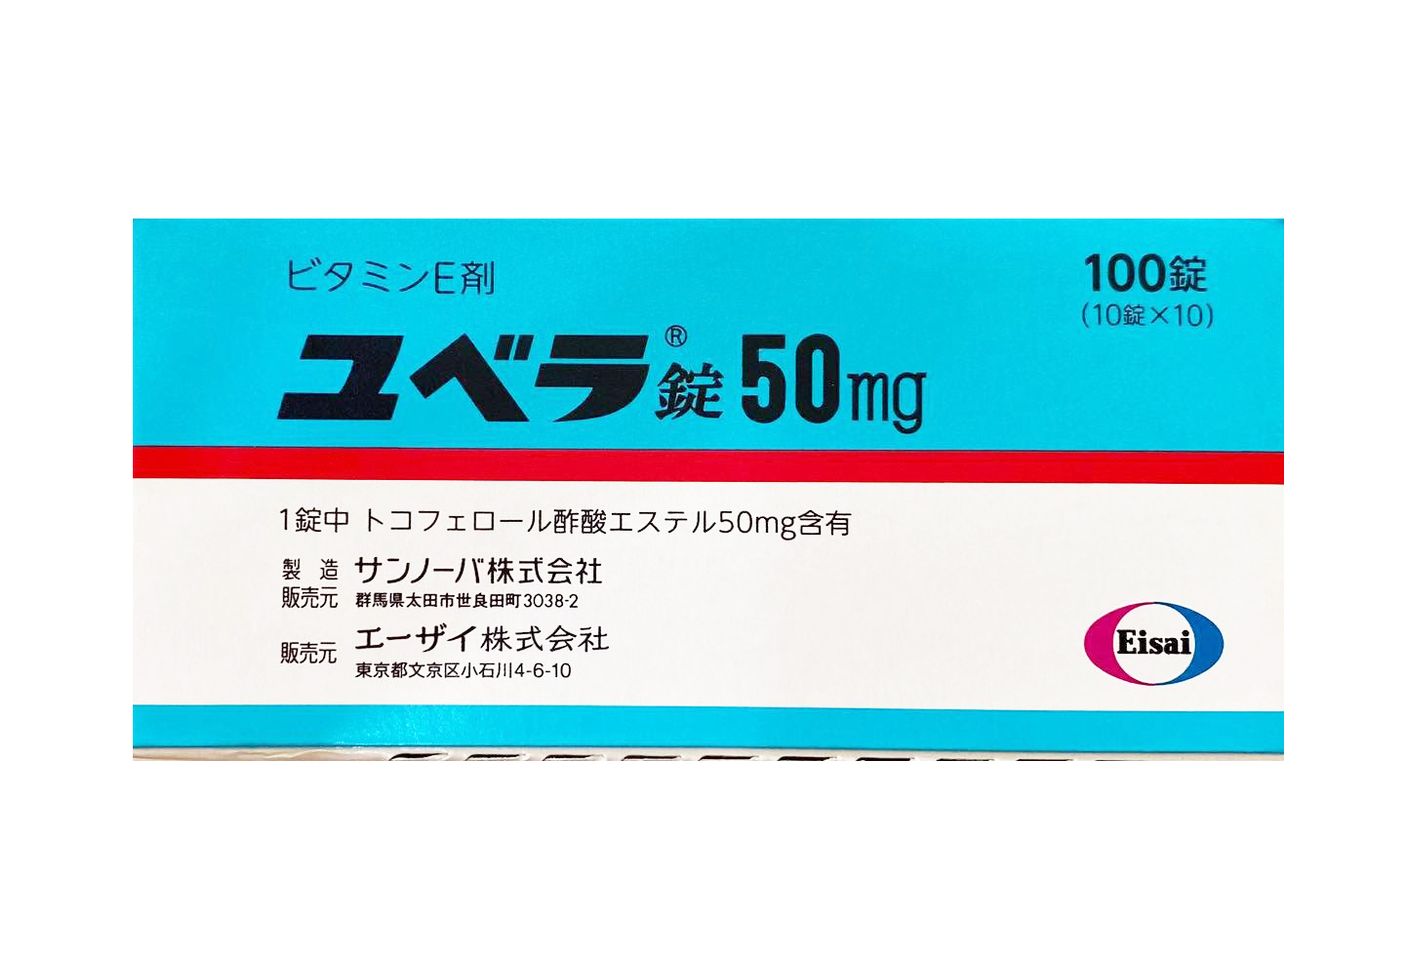 Vitamin E Nipro 50mg Chính Hãng Của Nhật Bản